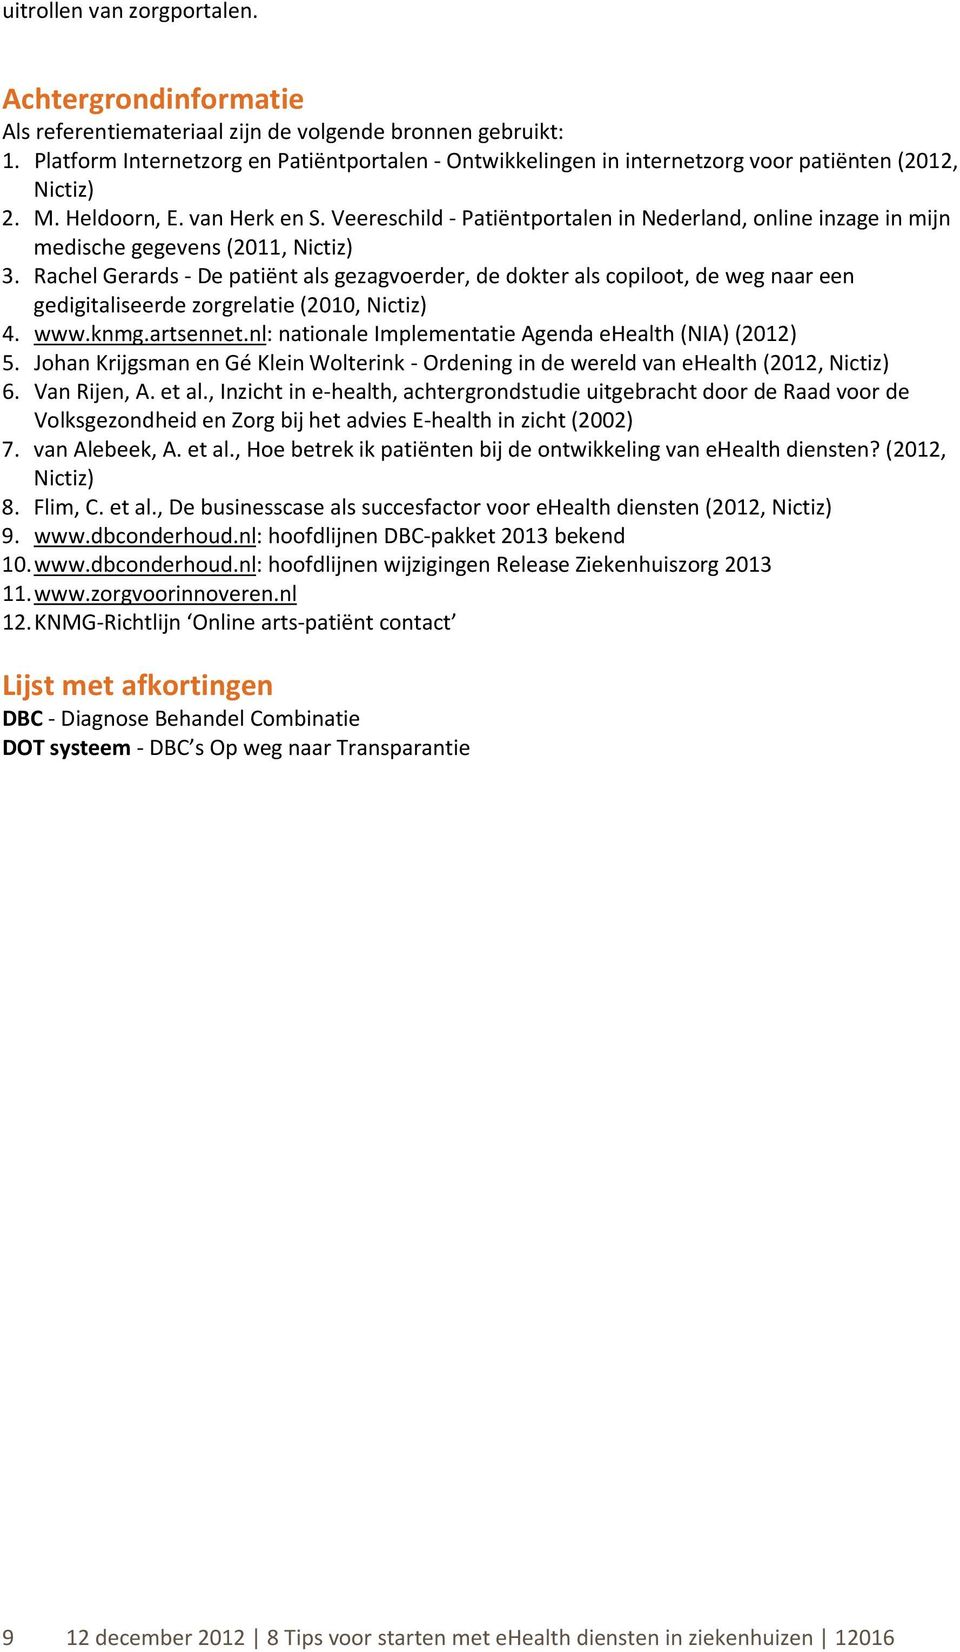 Veereschild - Patiëntportalen in Nederland, online inzage in mijn medische gegevens (2011, Nictiz) 3.